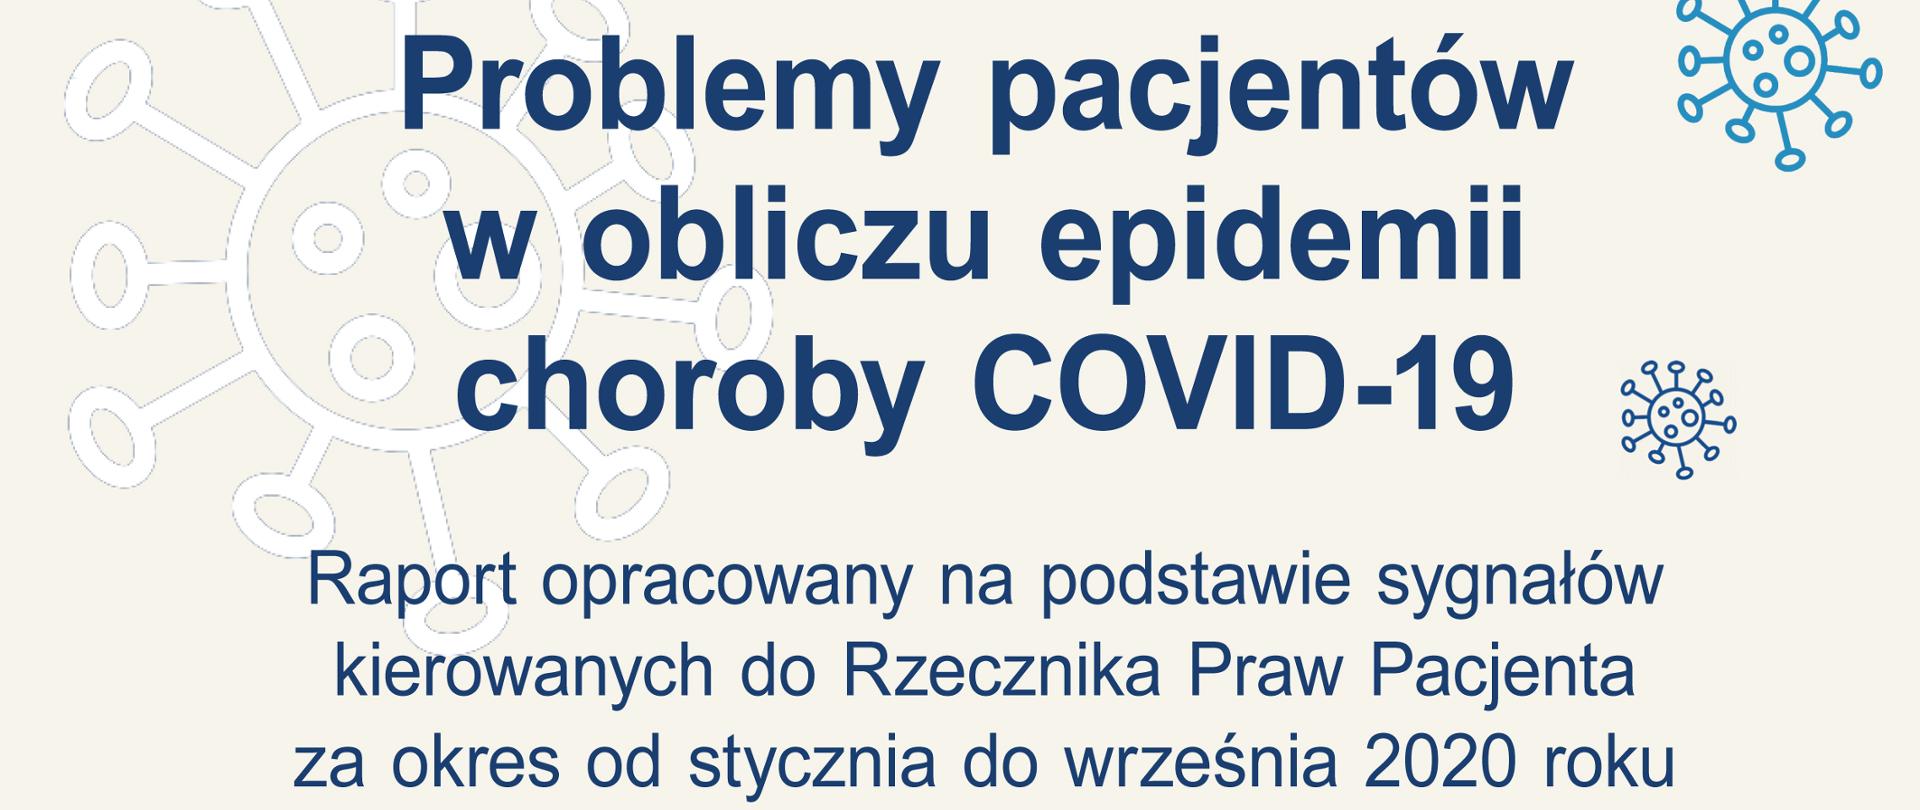 Problemy pacjentów w obliczu epidemii choroby COVID-19